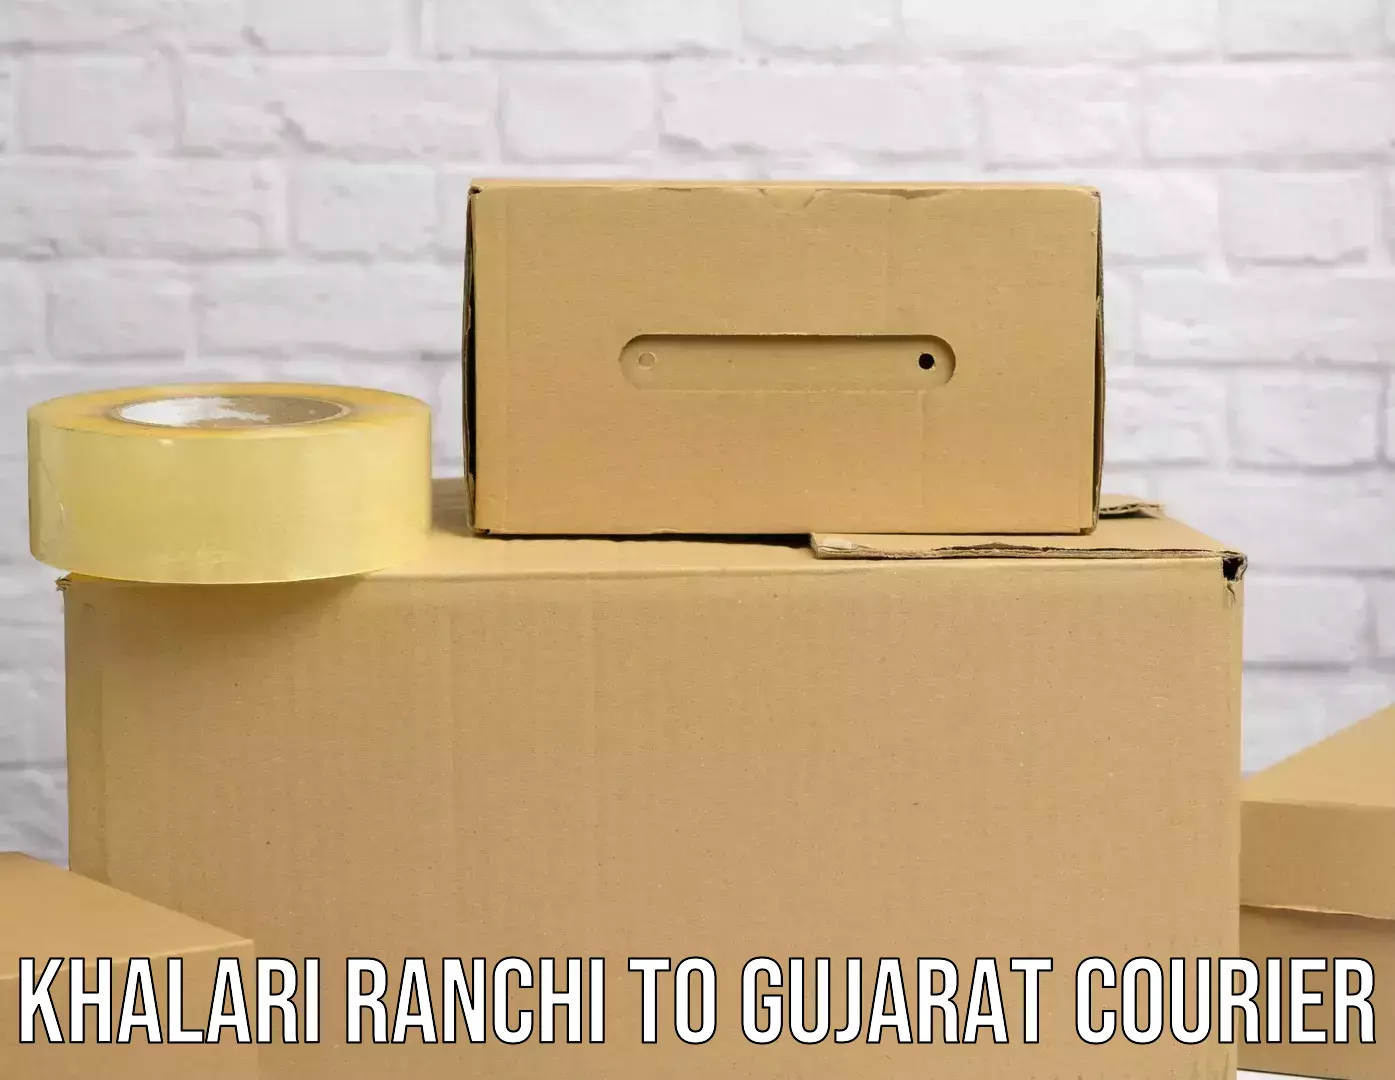 Rural area delivery in Khalari Ranchi to Gujarat